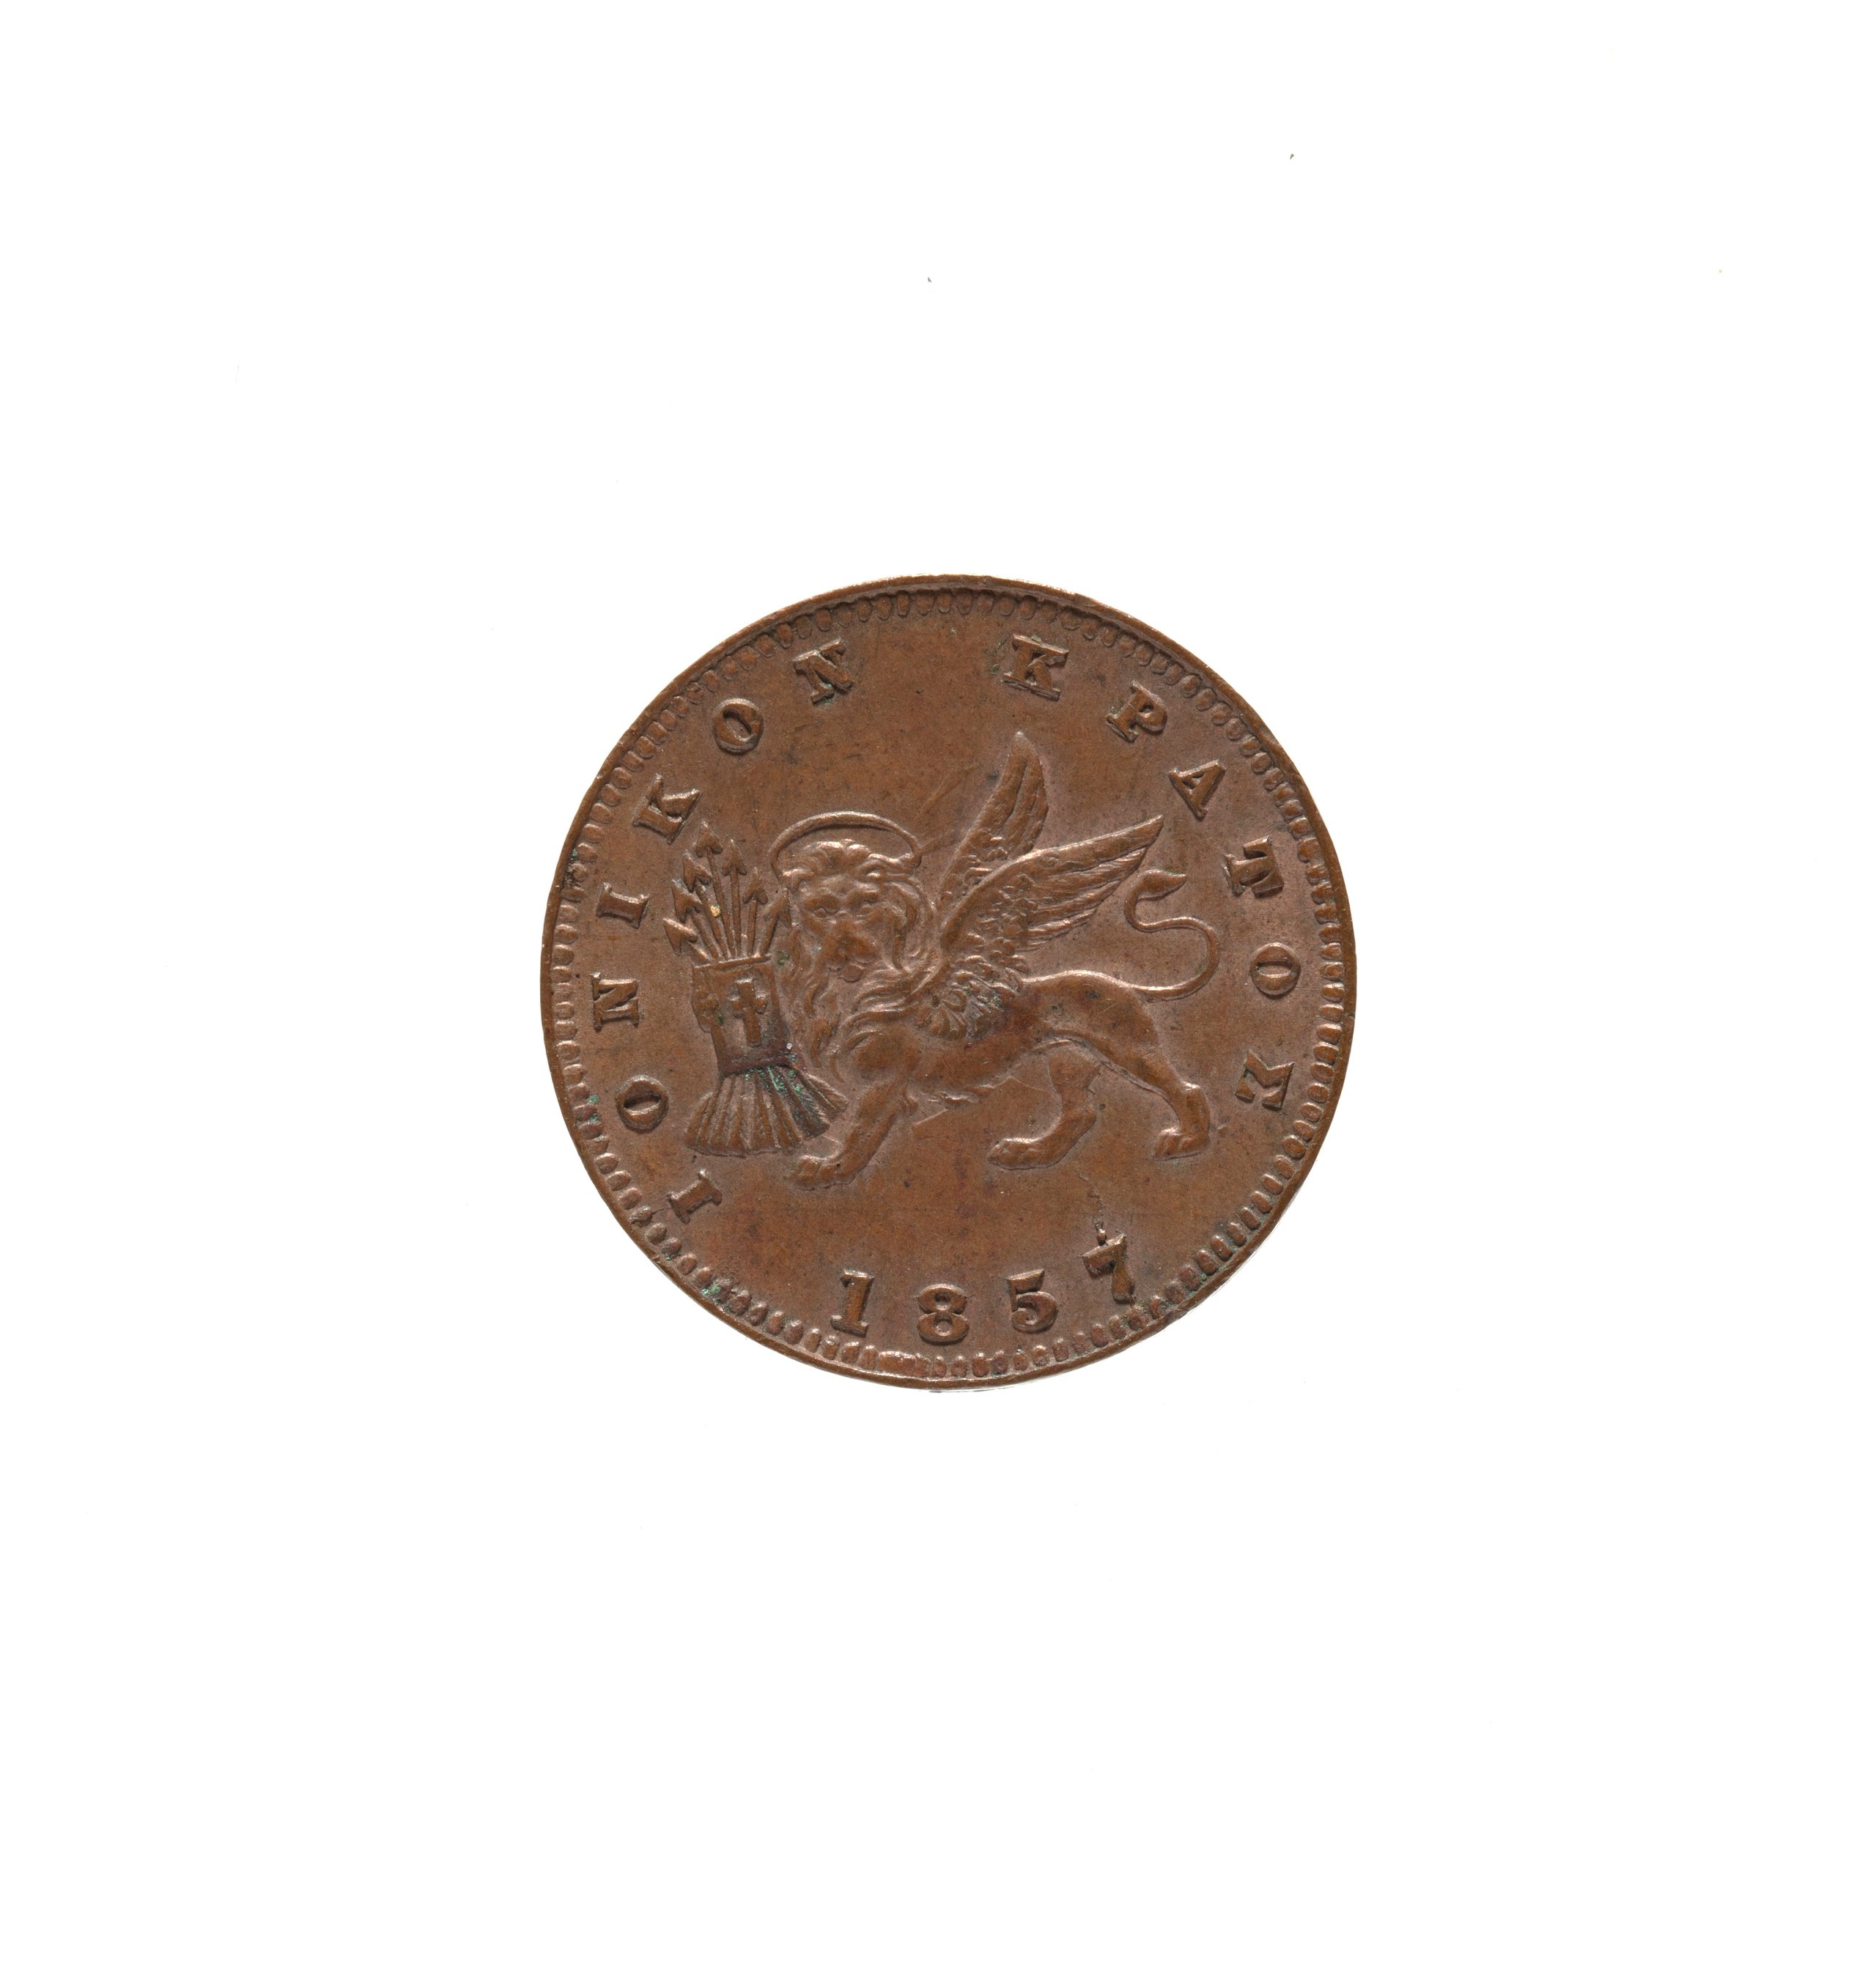 Greek Farthing coin